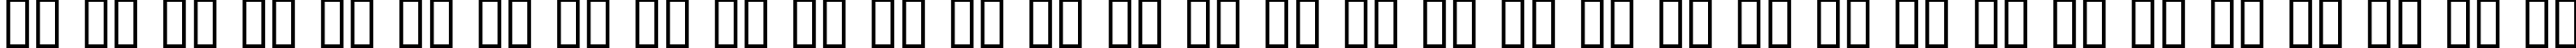 Пример написания русского алфавита шрифтом DeadGrit